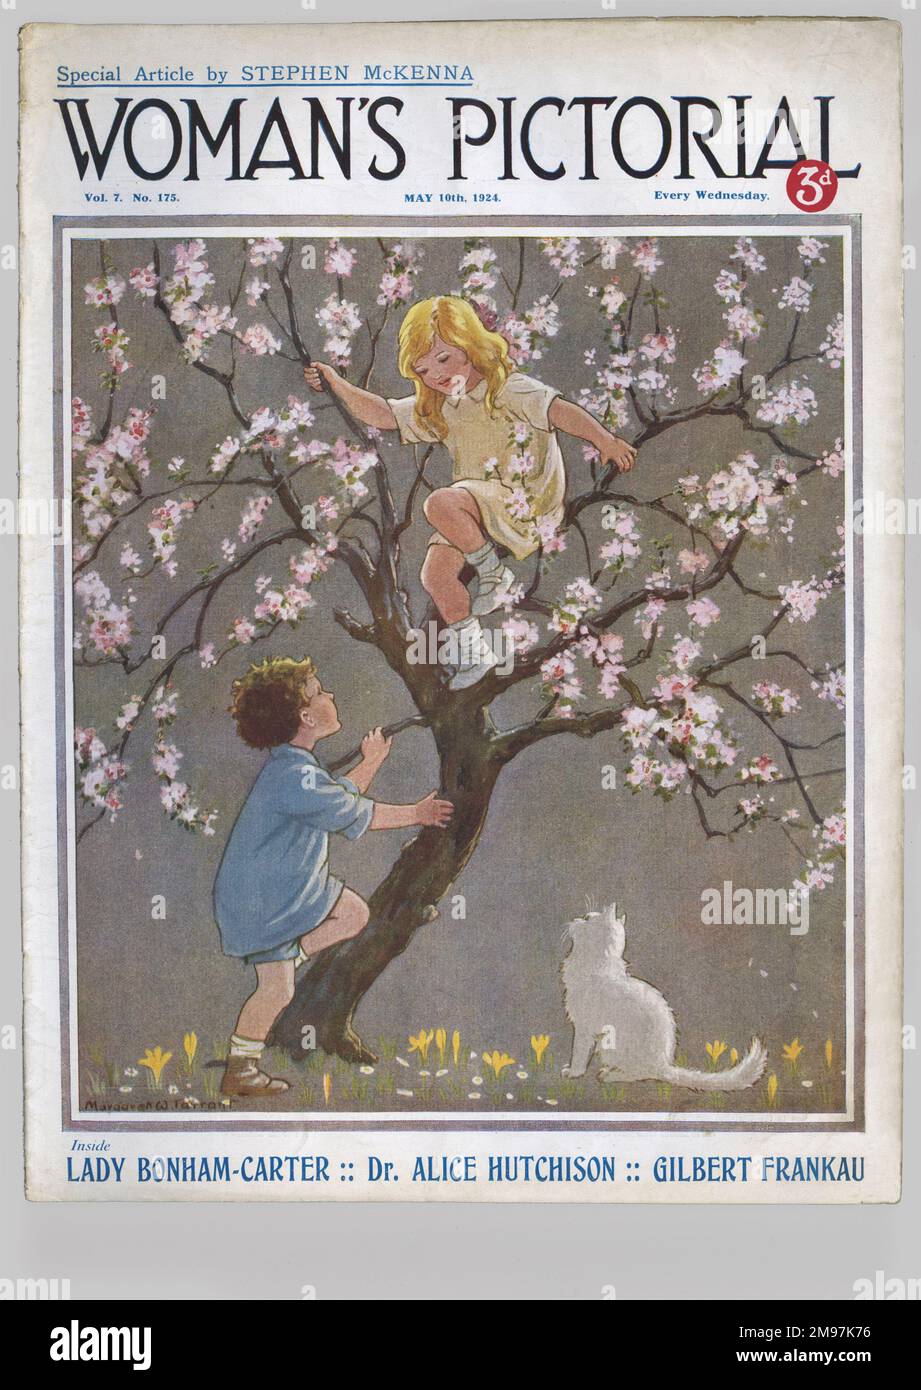 Cover-Design von Margaret W Tarrant, Frauenmagazin, 10. Mai 1924. Ein Mädchen und ein Junge klettern auf einen Baum in Blüte, beobachtet von einer weißen Katze. Mit einem Sonderartikel von Stephen McKenna und Artikeln von Lady Bonham-Carter, Dr. Alice Hutchison und Gilbert Frankau. Stockfoto